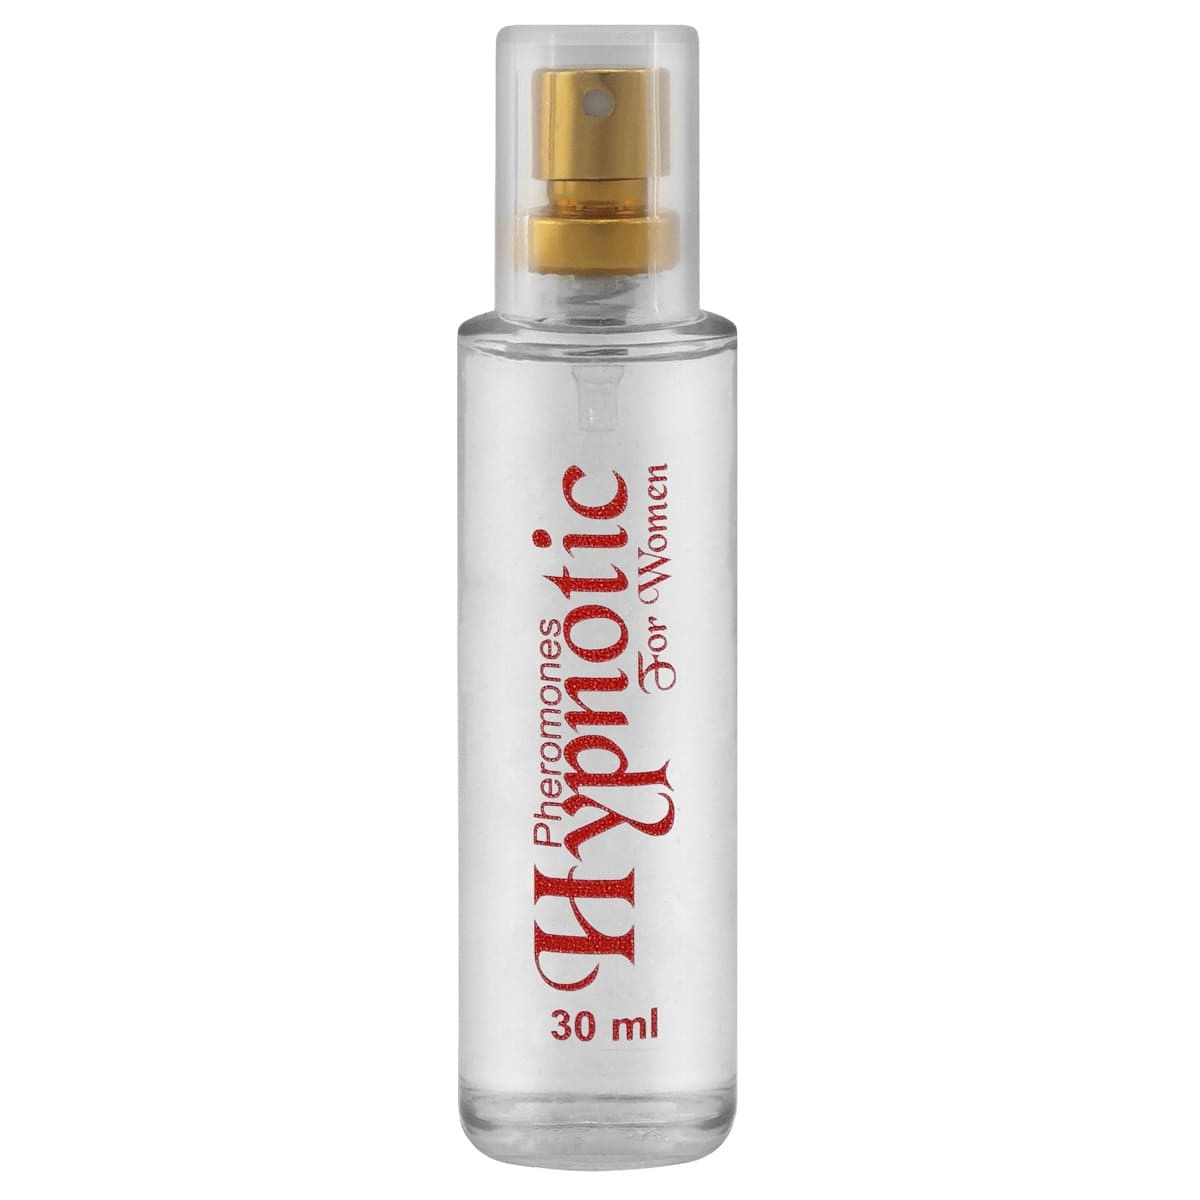 Hypnotic Pheromones For Women Perfume Feminino 30ml Garji